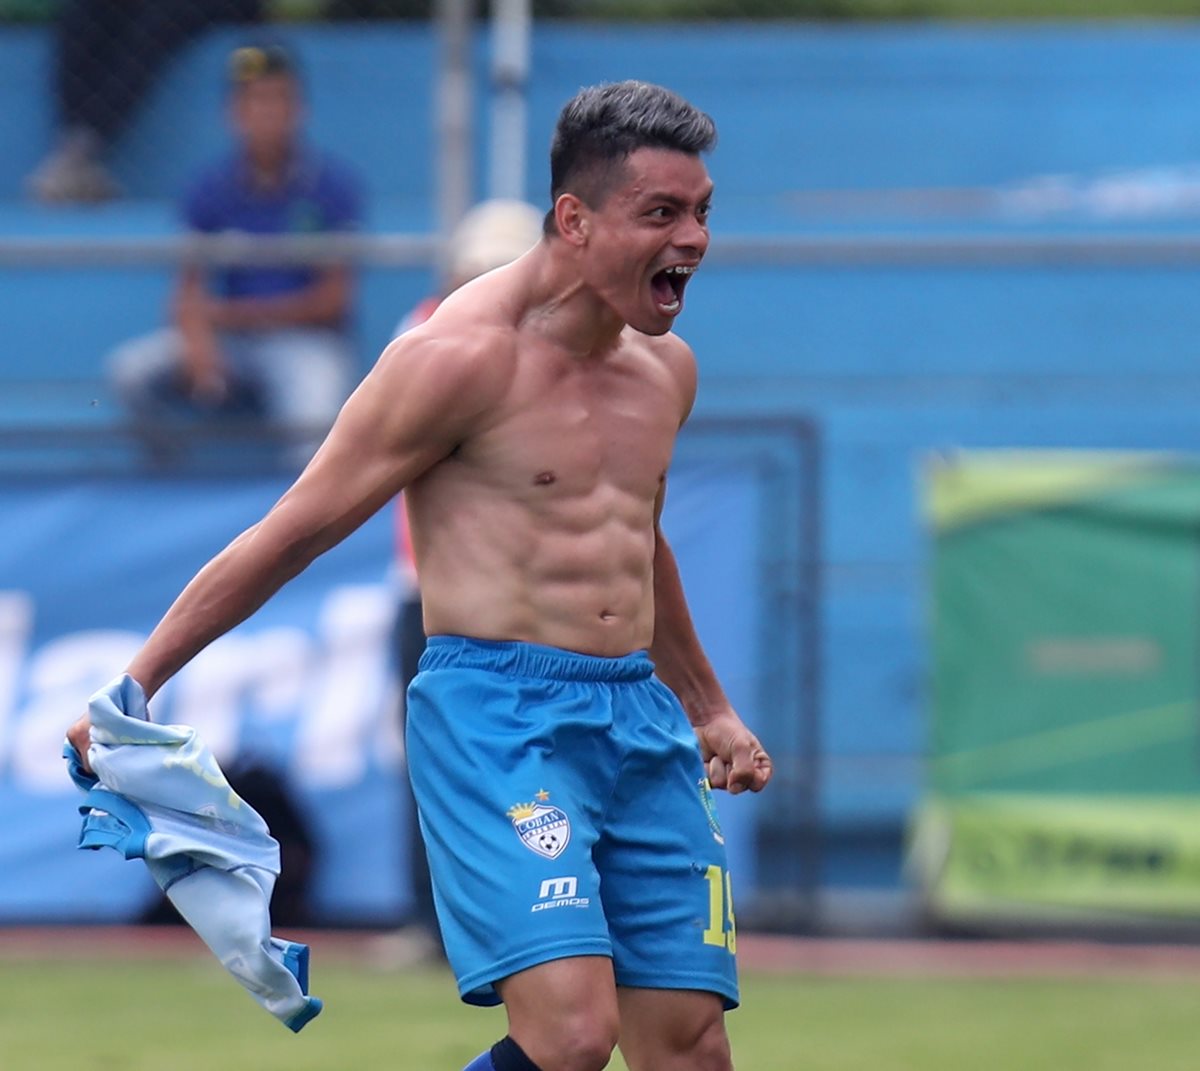 La celebración explosiva de Robin Betancourth después de anotar el gol de la victoria cobanera en el estadio "El Trébol". (Foto Prensa Libre: Carlos Vicente)